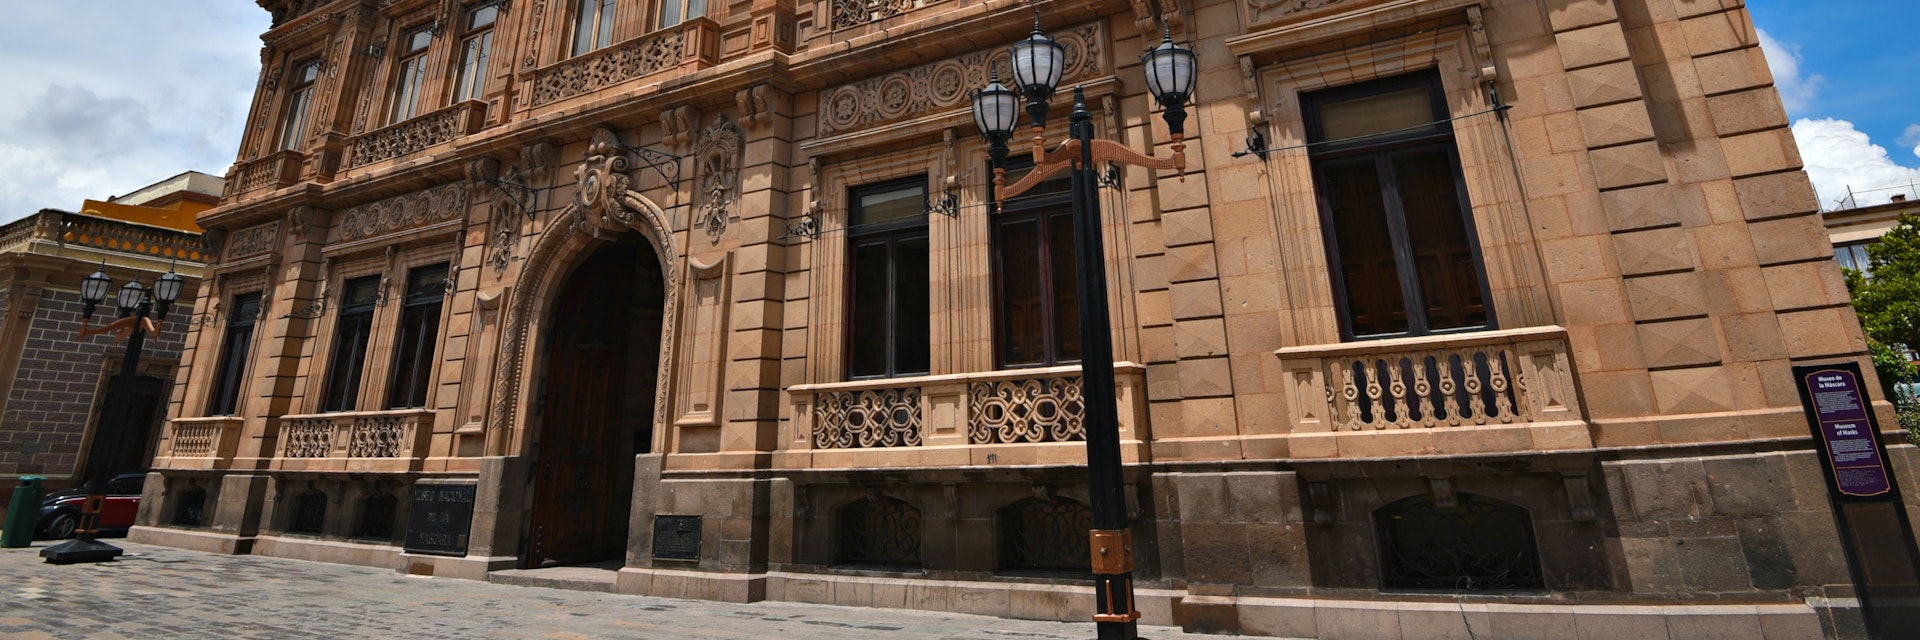 Exterior of the Museo Nacional de la Máscara located in the historic Plaza del Carmen in San Luis Potosí, Mexico.